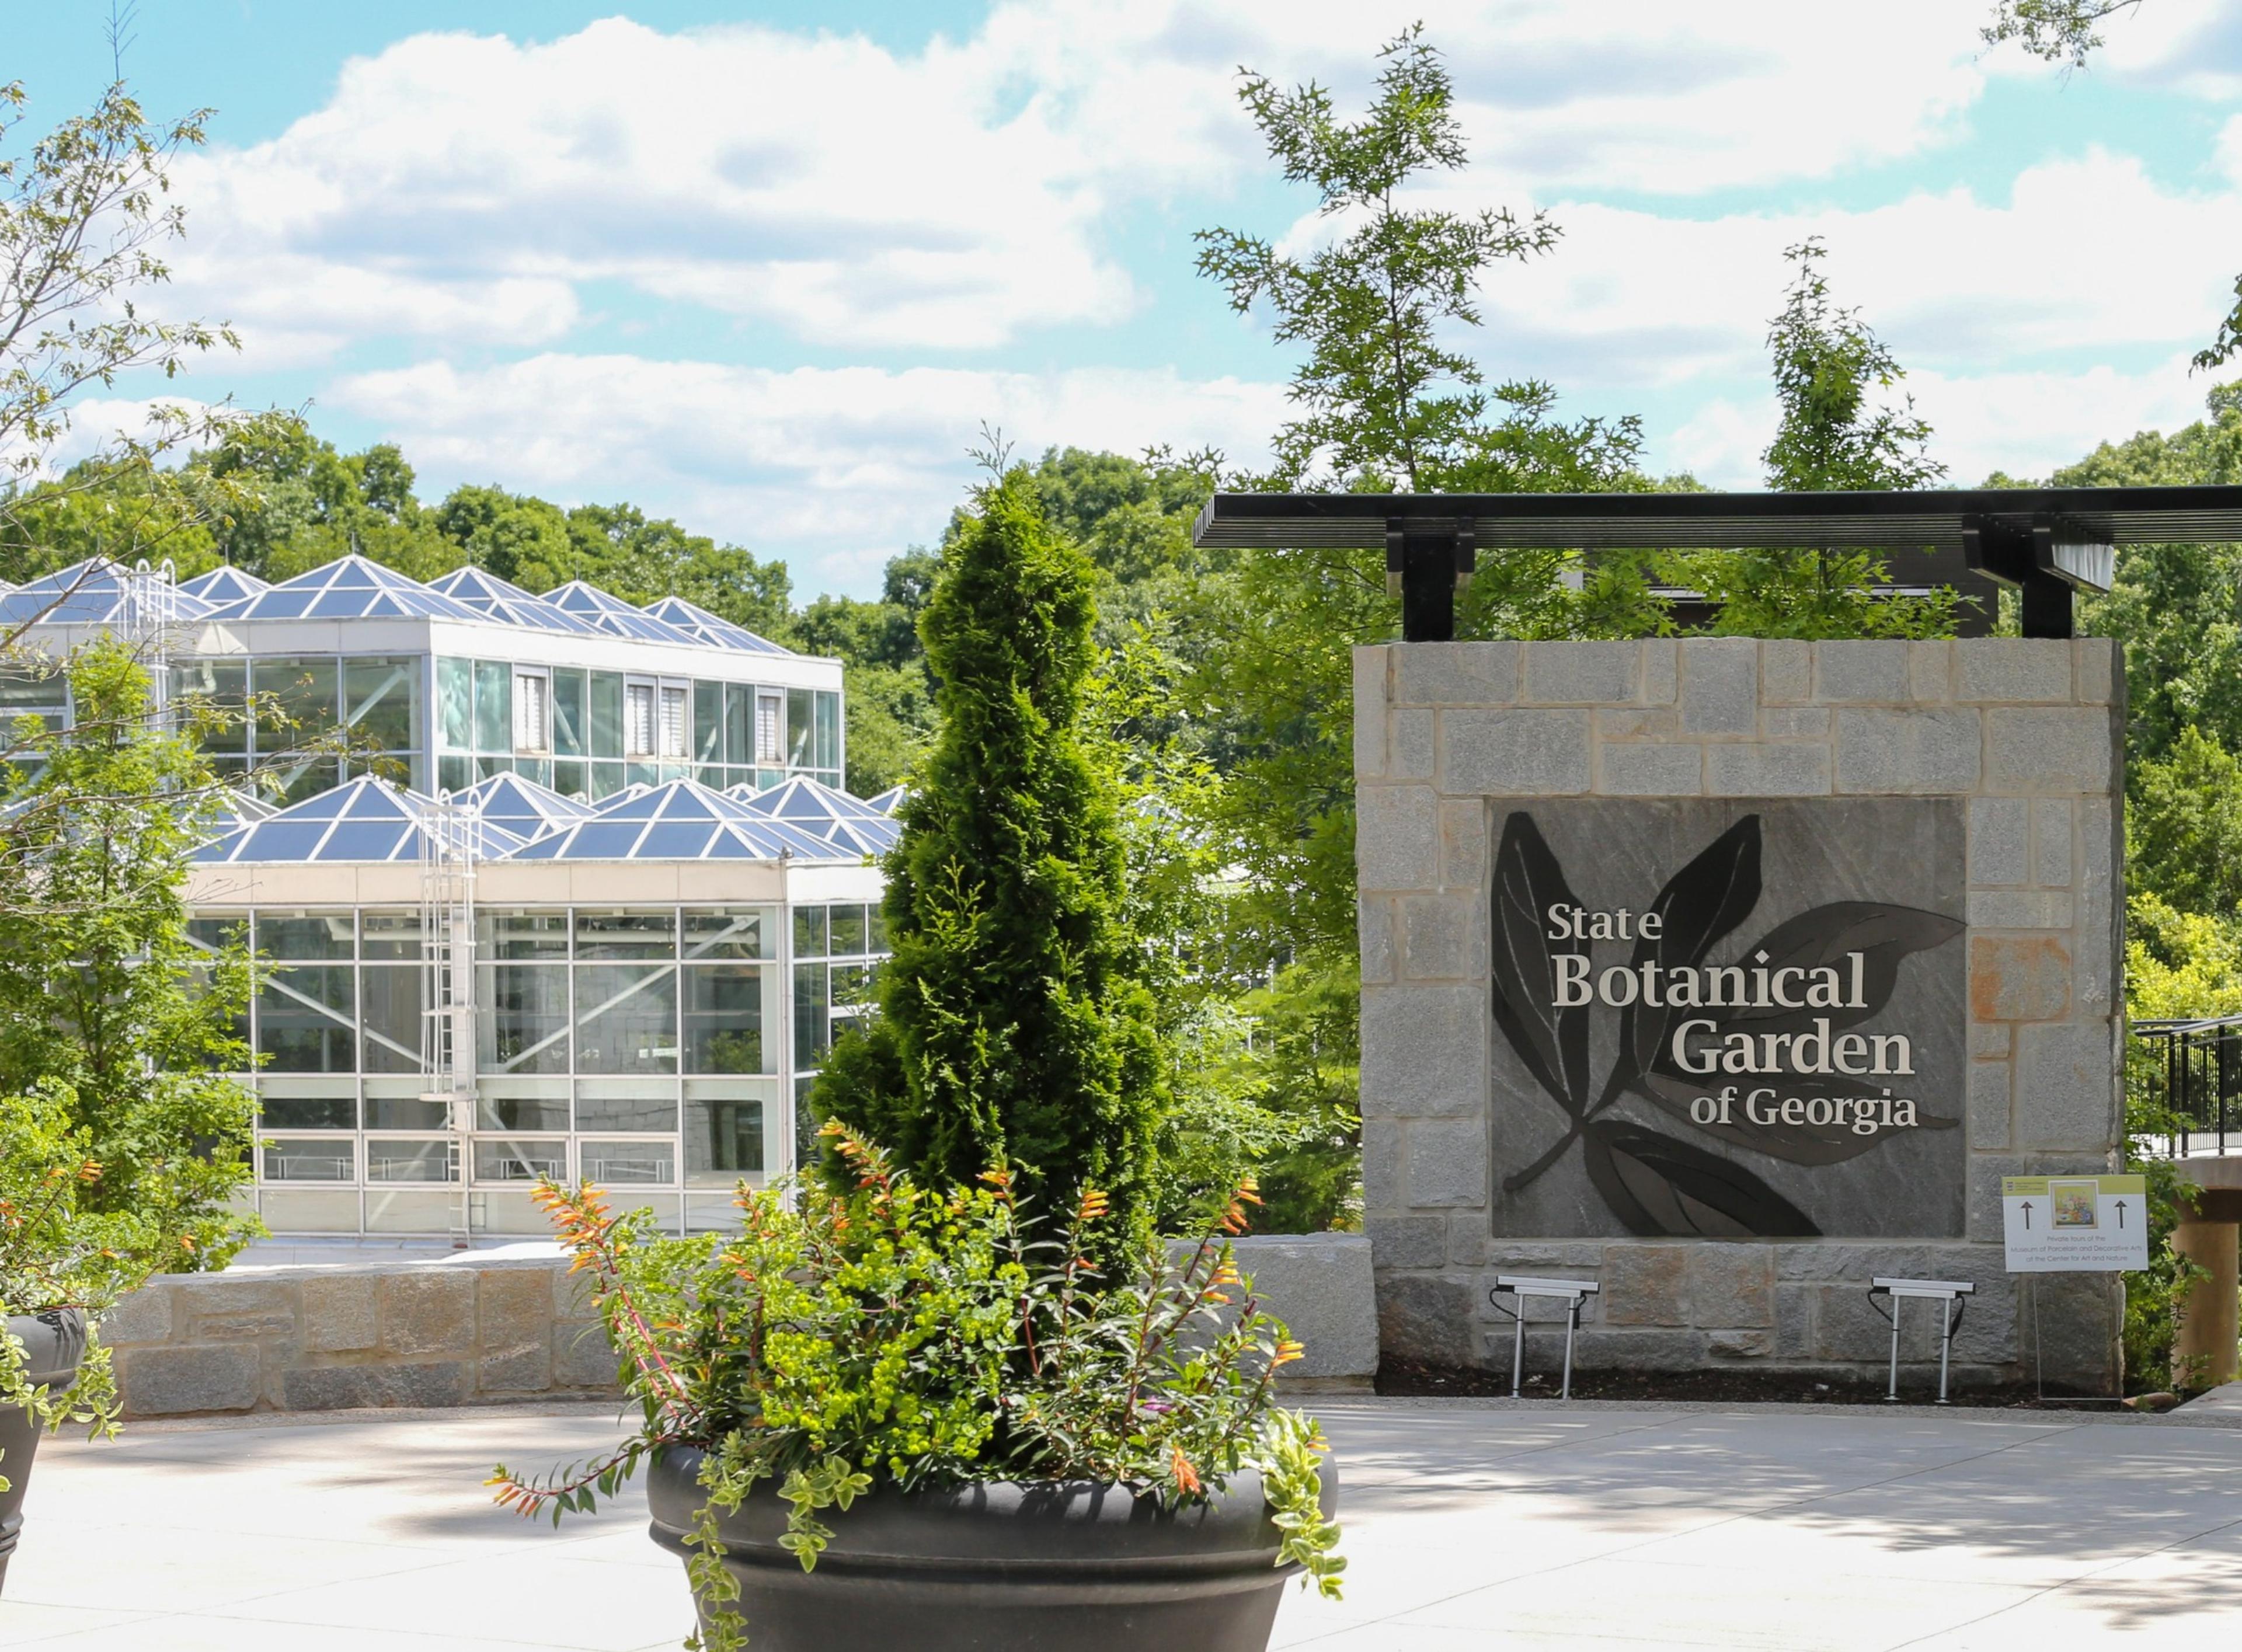 The State Botanical Garden of Georgia